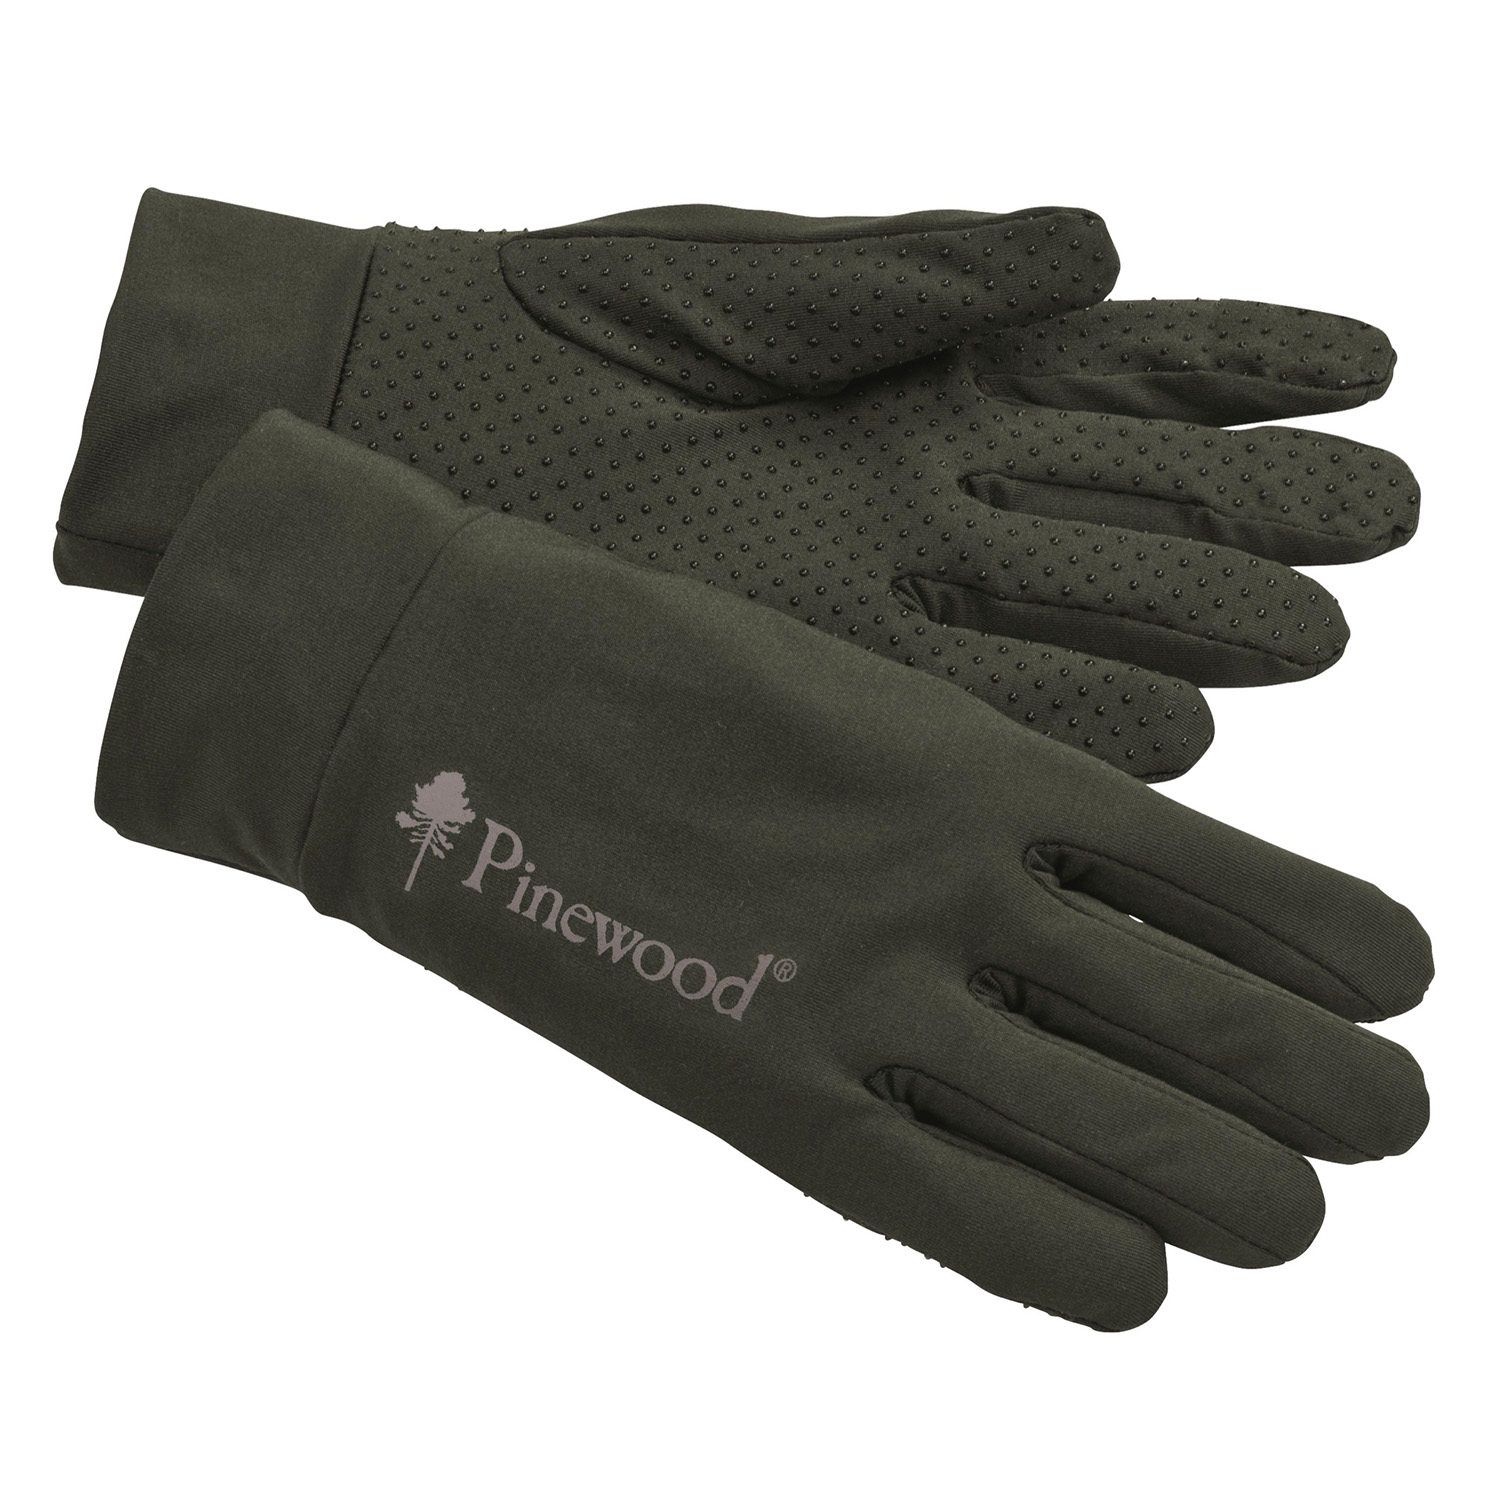  Pinewood Dunne voeringhandschoen (mosgroen) - Handschoenen